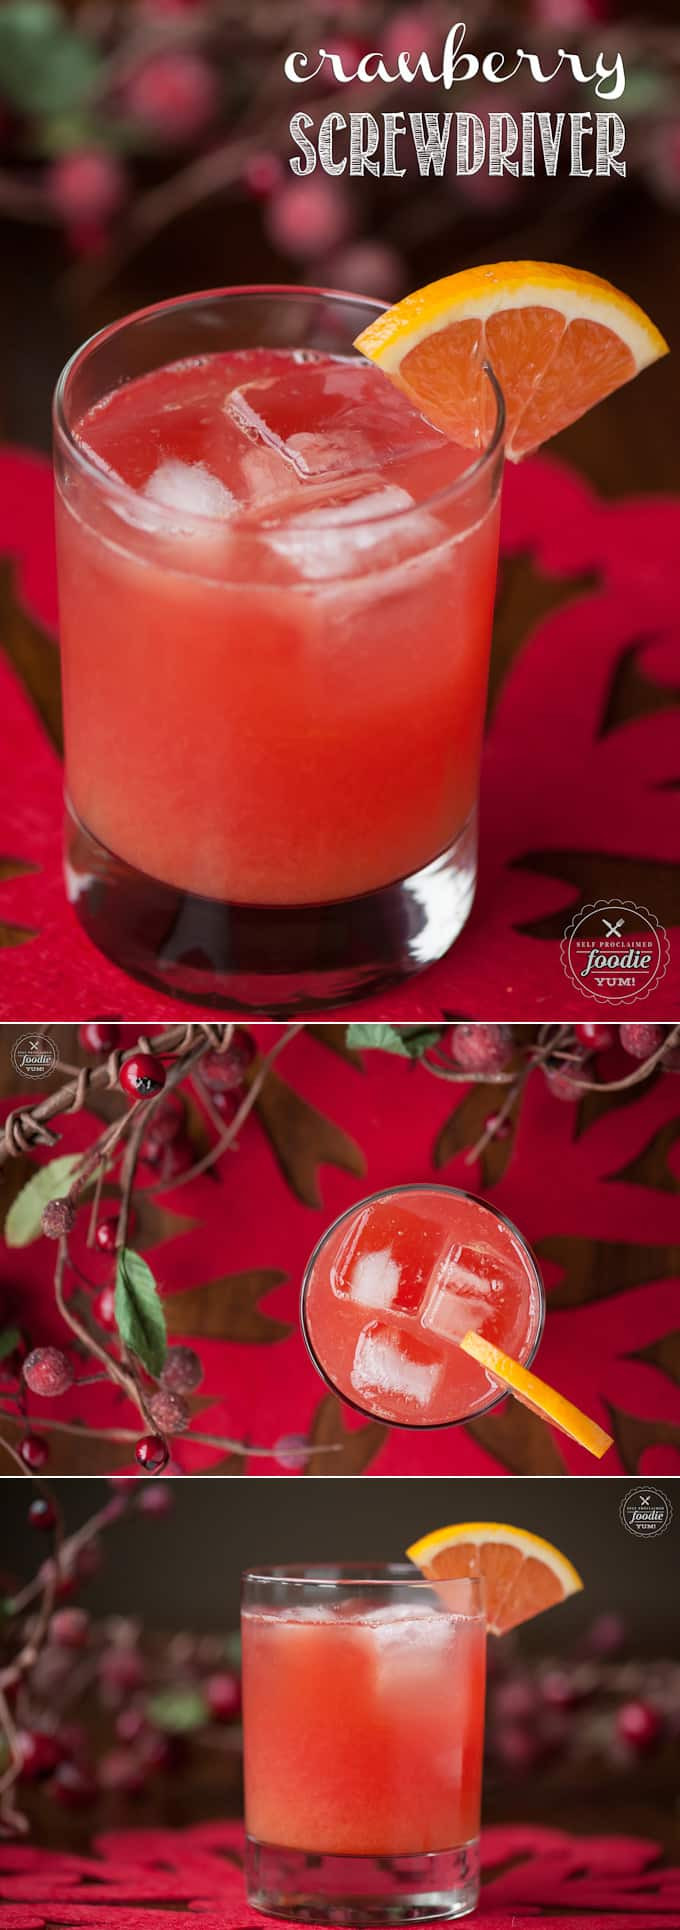 Cranberry Vodka Cocktail Recipes
 Cranberry Screwdriver